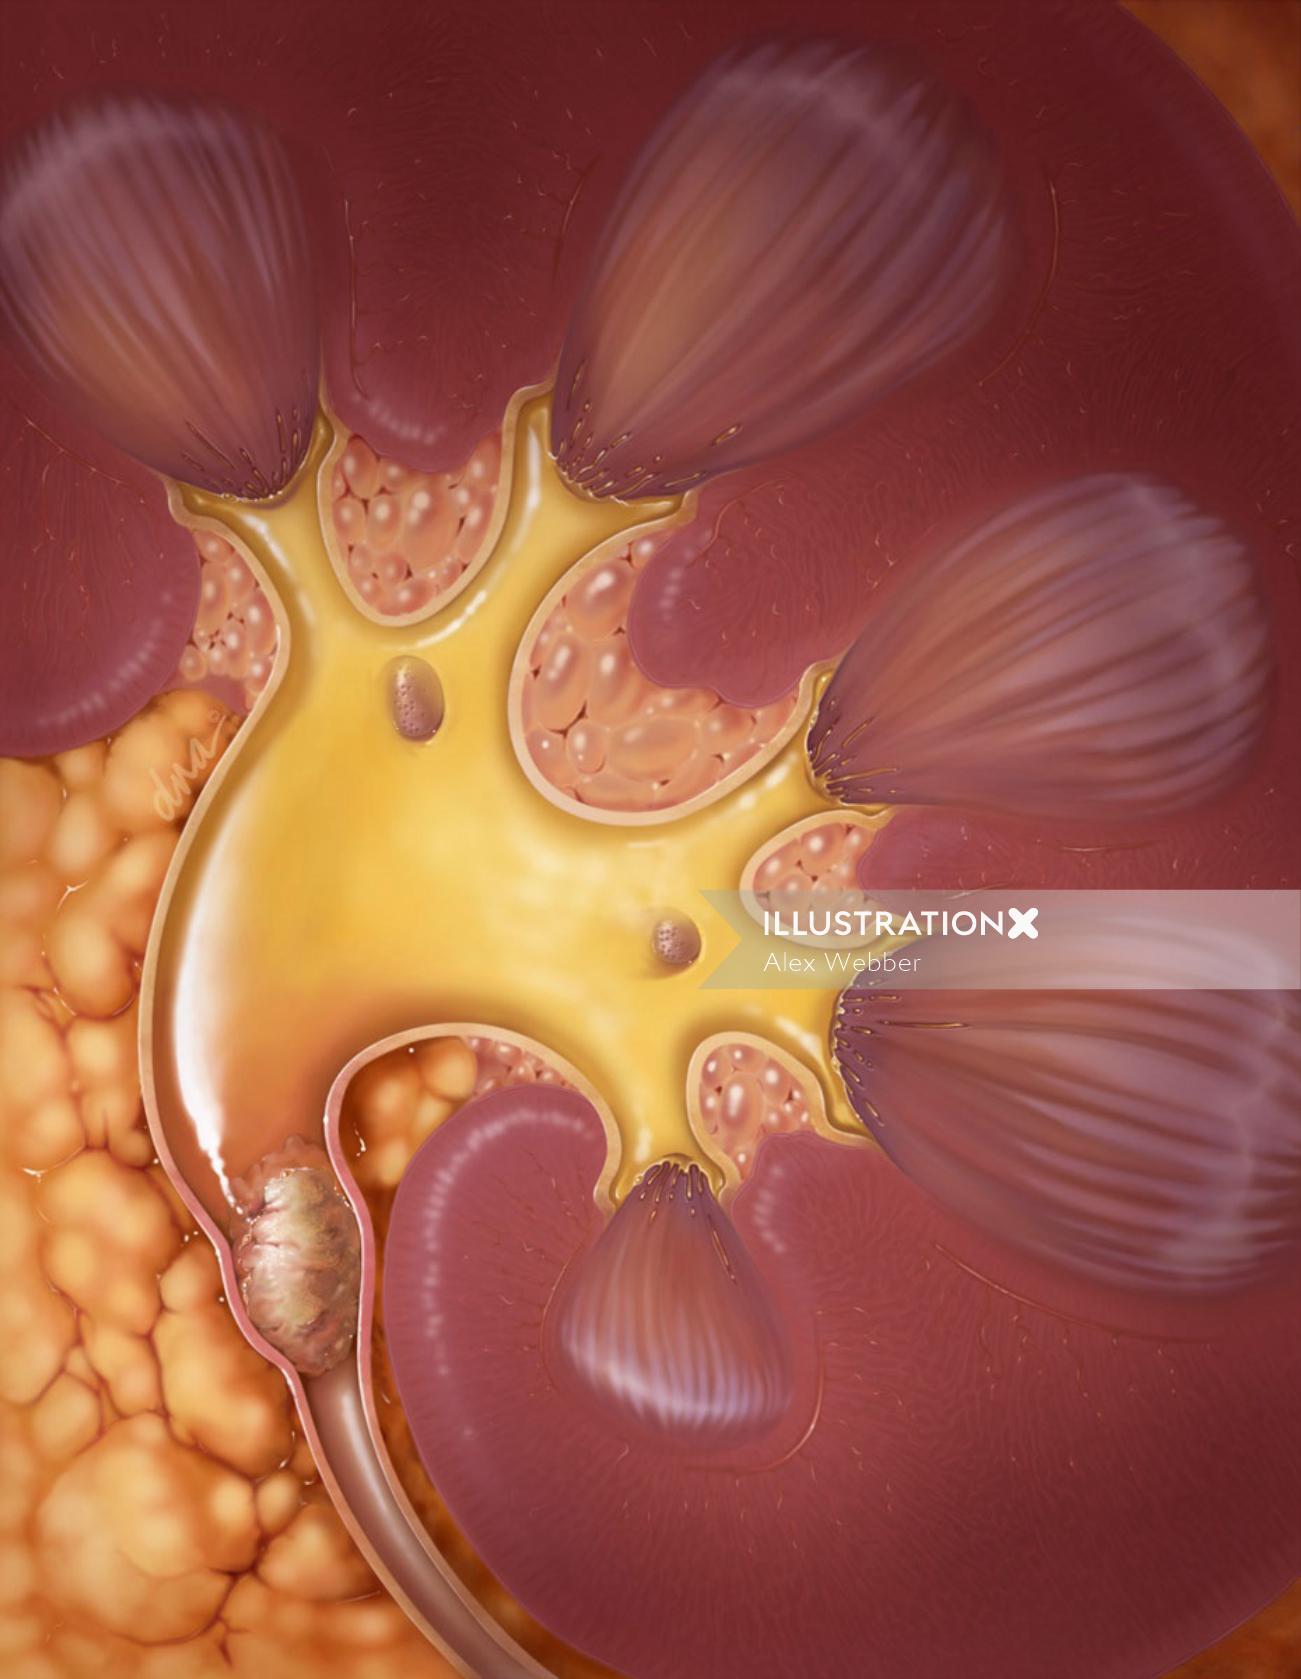 Uma ilustração da pedra nos rins no ureter proximal